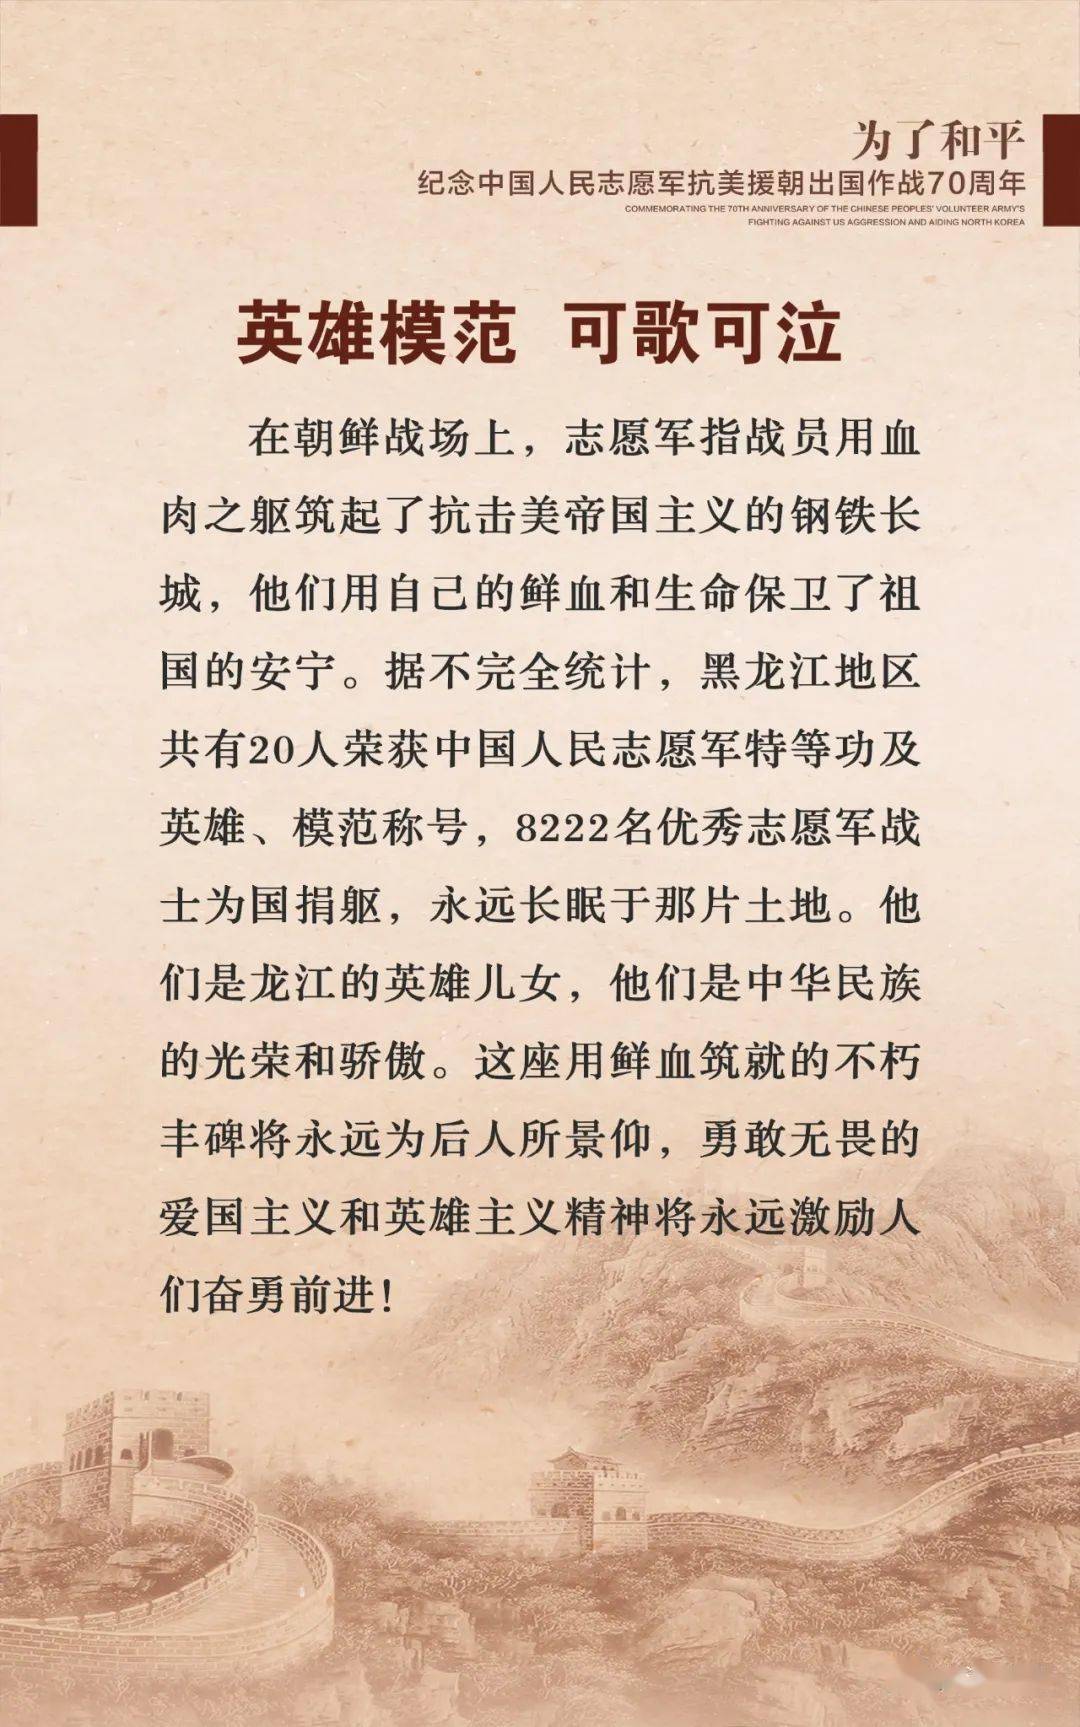 黑龙江抗美援朝运动网上档案图片展八英雄模范可歌可泣